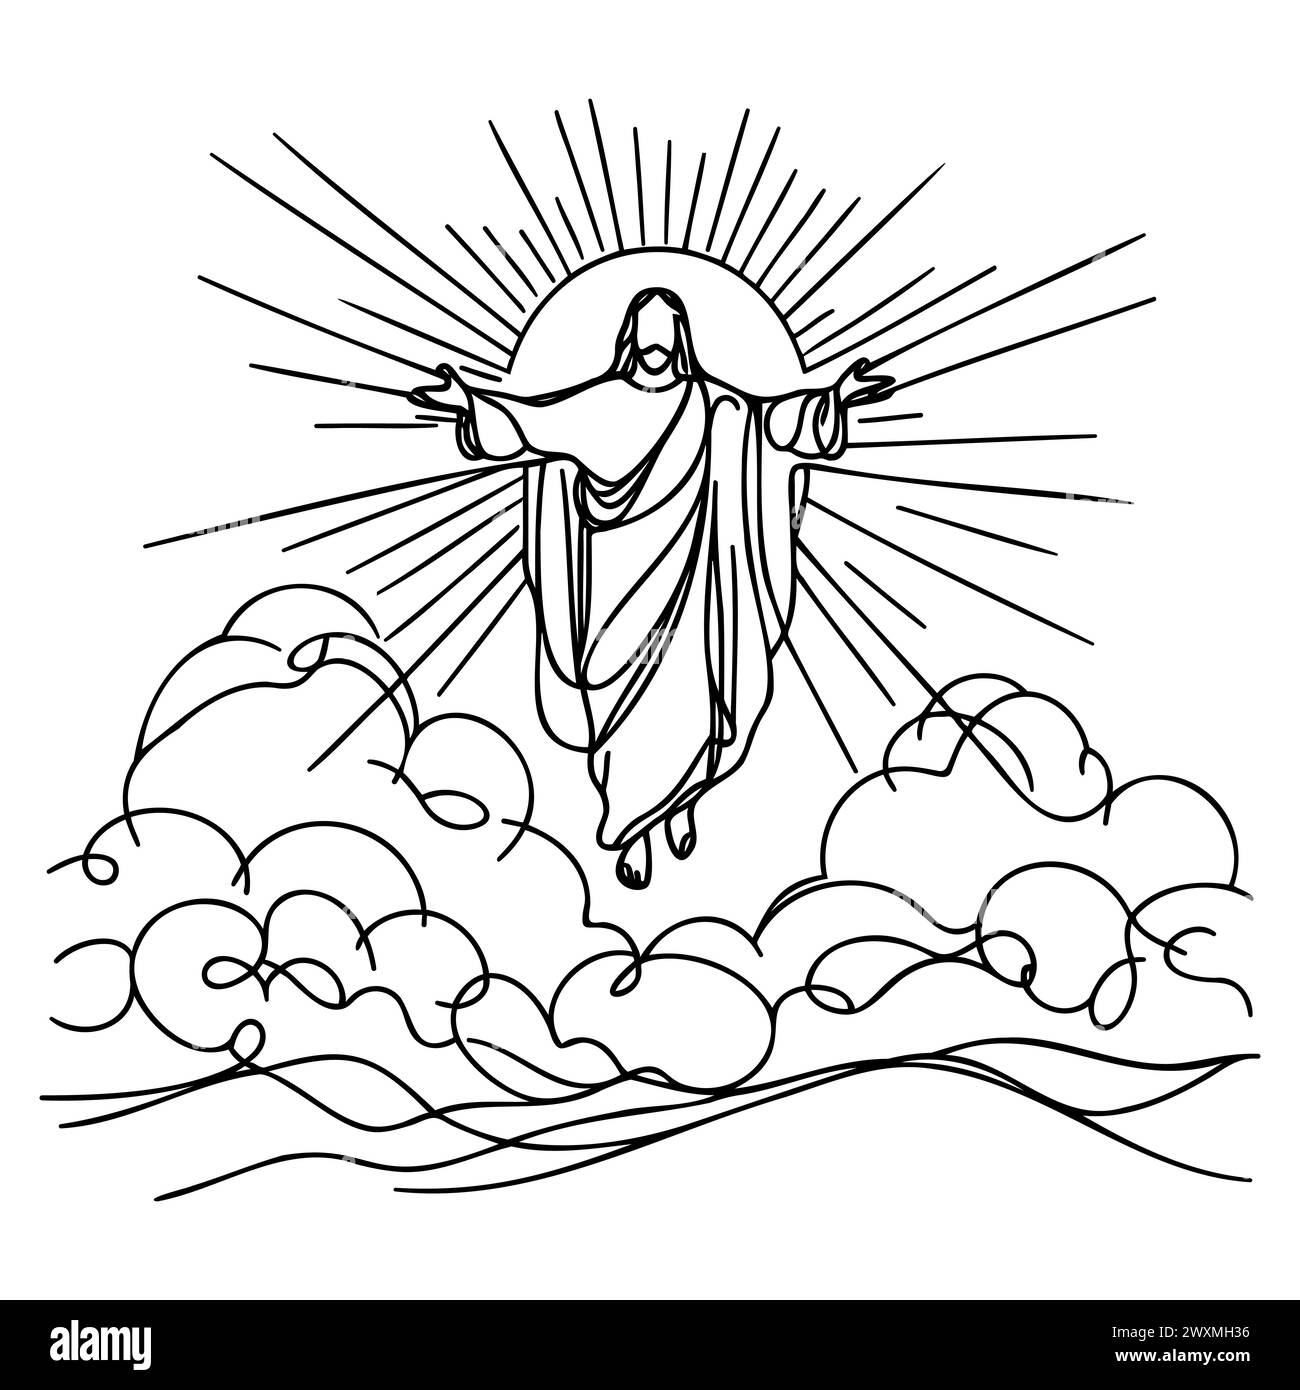 Une ligne continue représente Jésus-Christ. Contour isolé sur fond blanc. Illustration vectorielle. Illustration de Vecteur